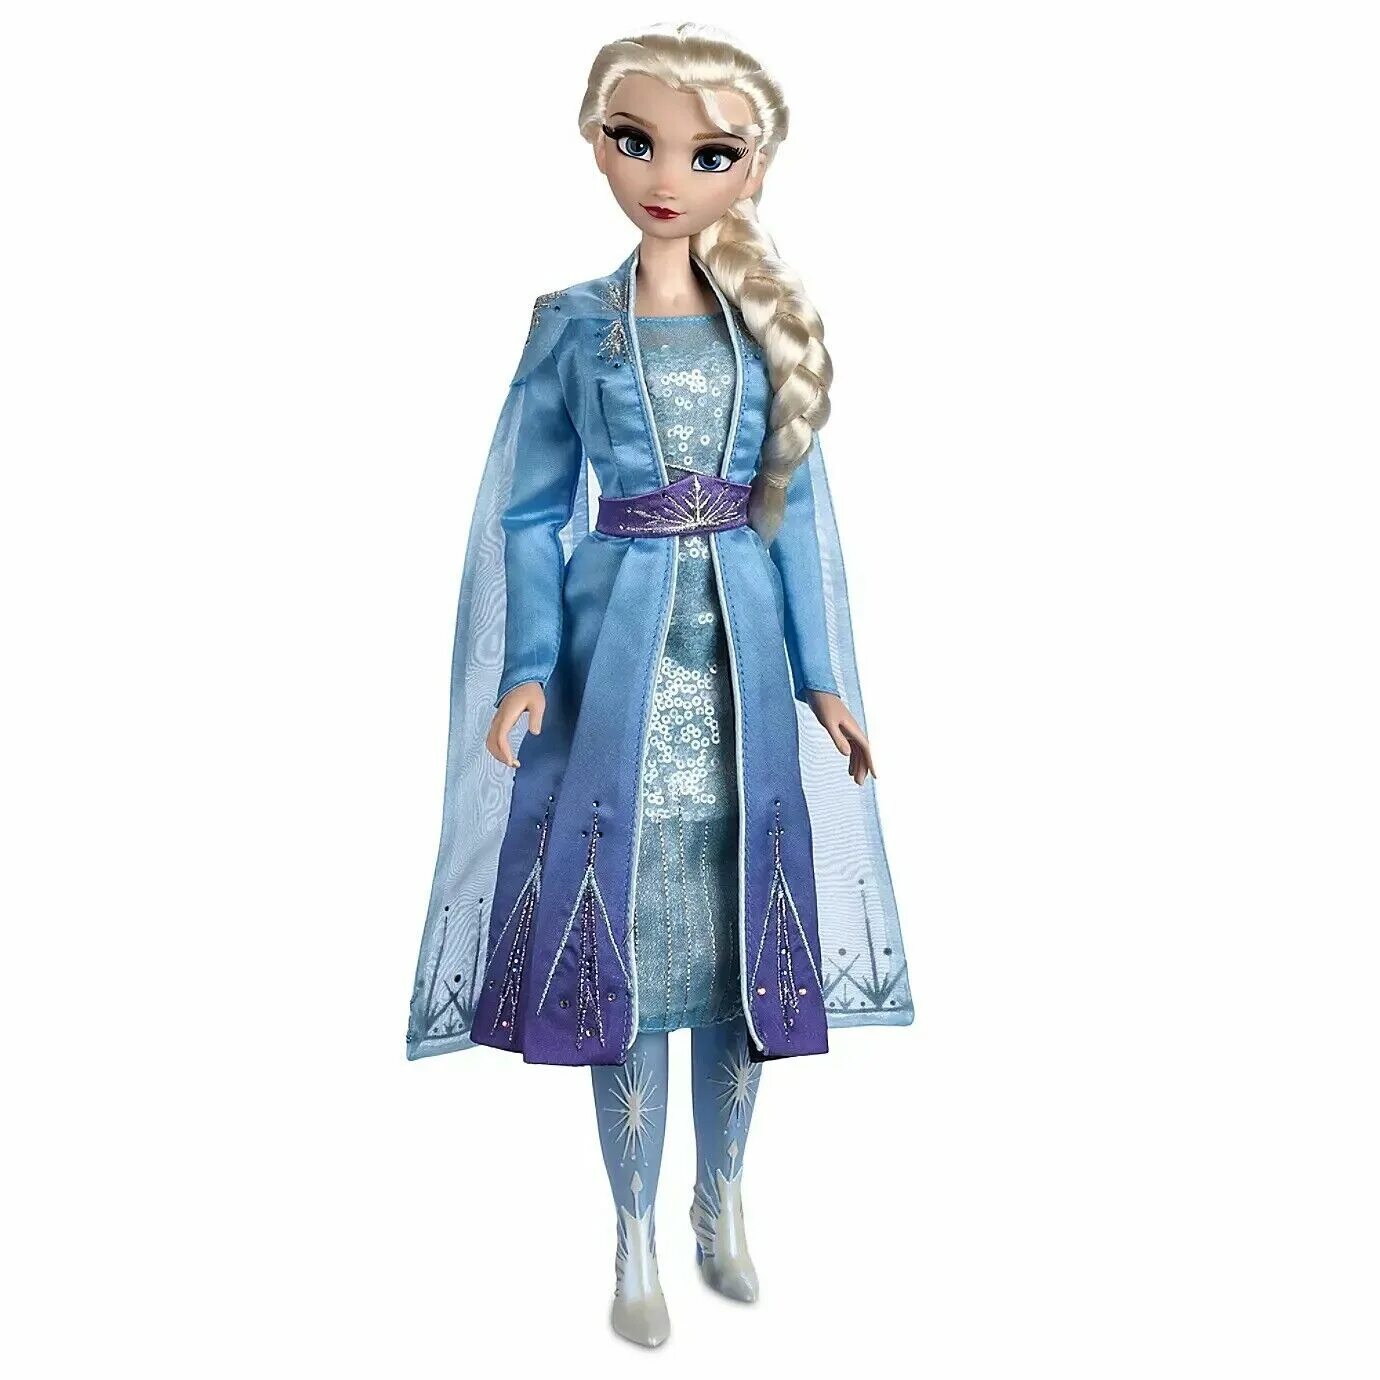 Купить куклу холодное. Куклы Дисней принцессы лимитированная Elsa 17. Elsa Snow Queen Frozen 2 кукла.